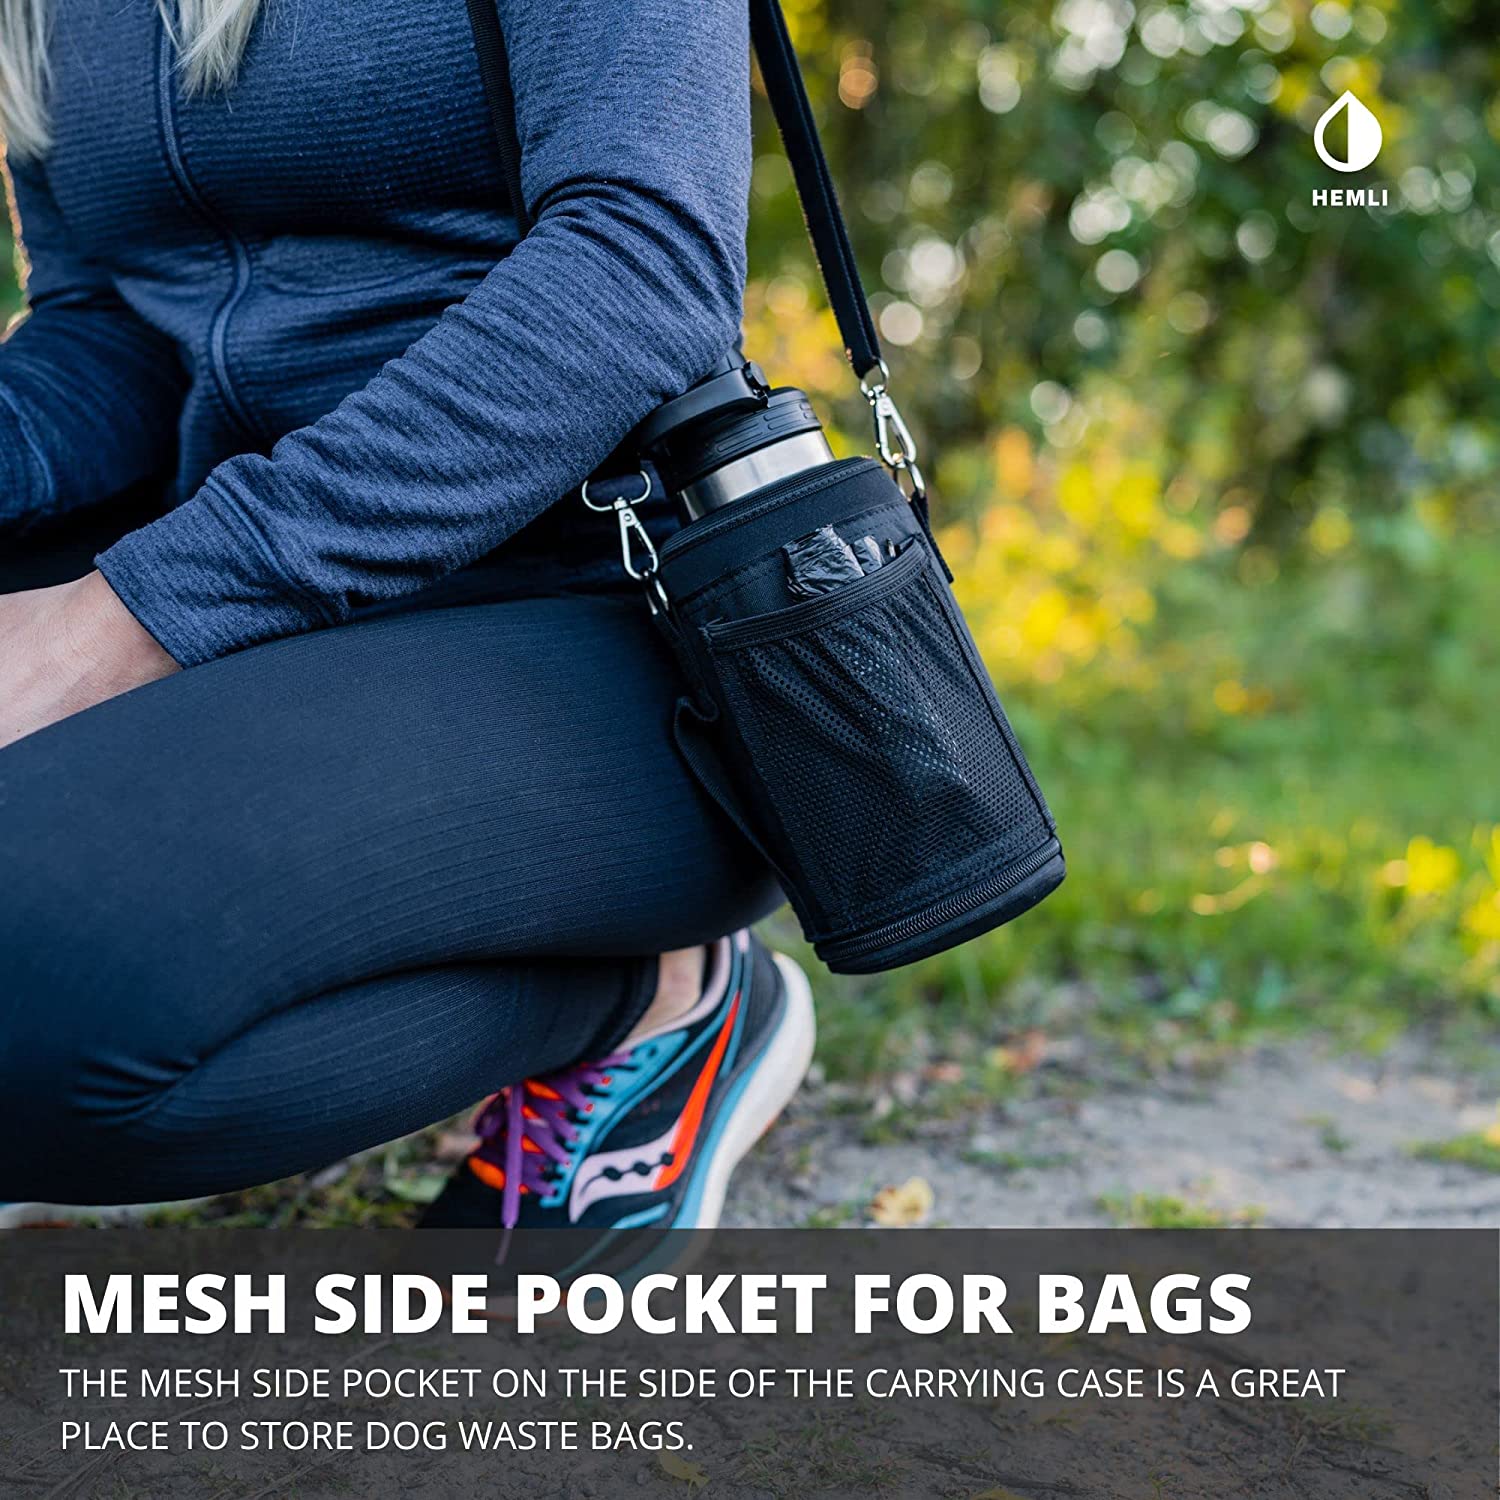 یک محفظه مشبک در کنار کیف حمل، مکان مناسبی برای نگهداری کیسه های مدفوع سگ شما است